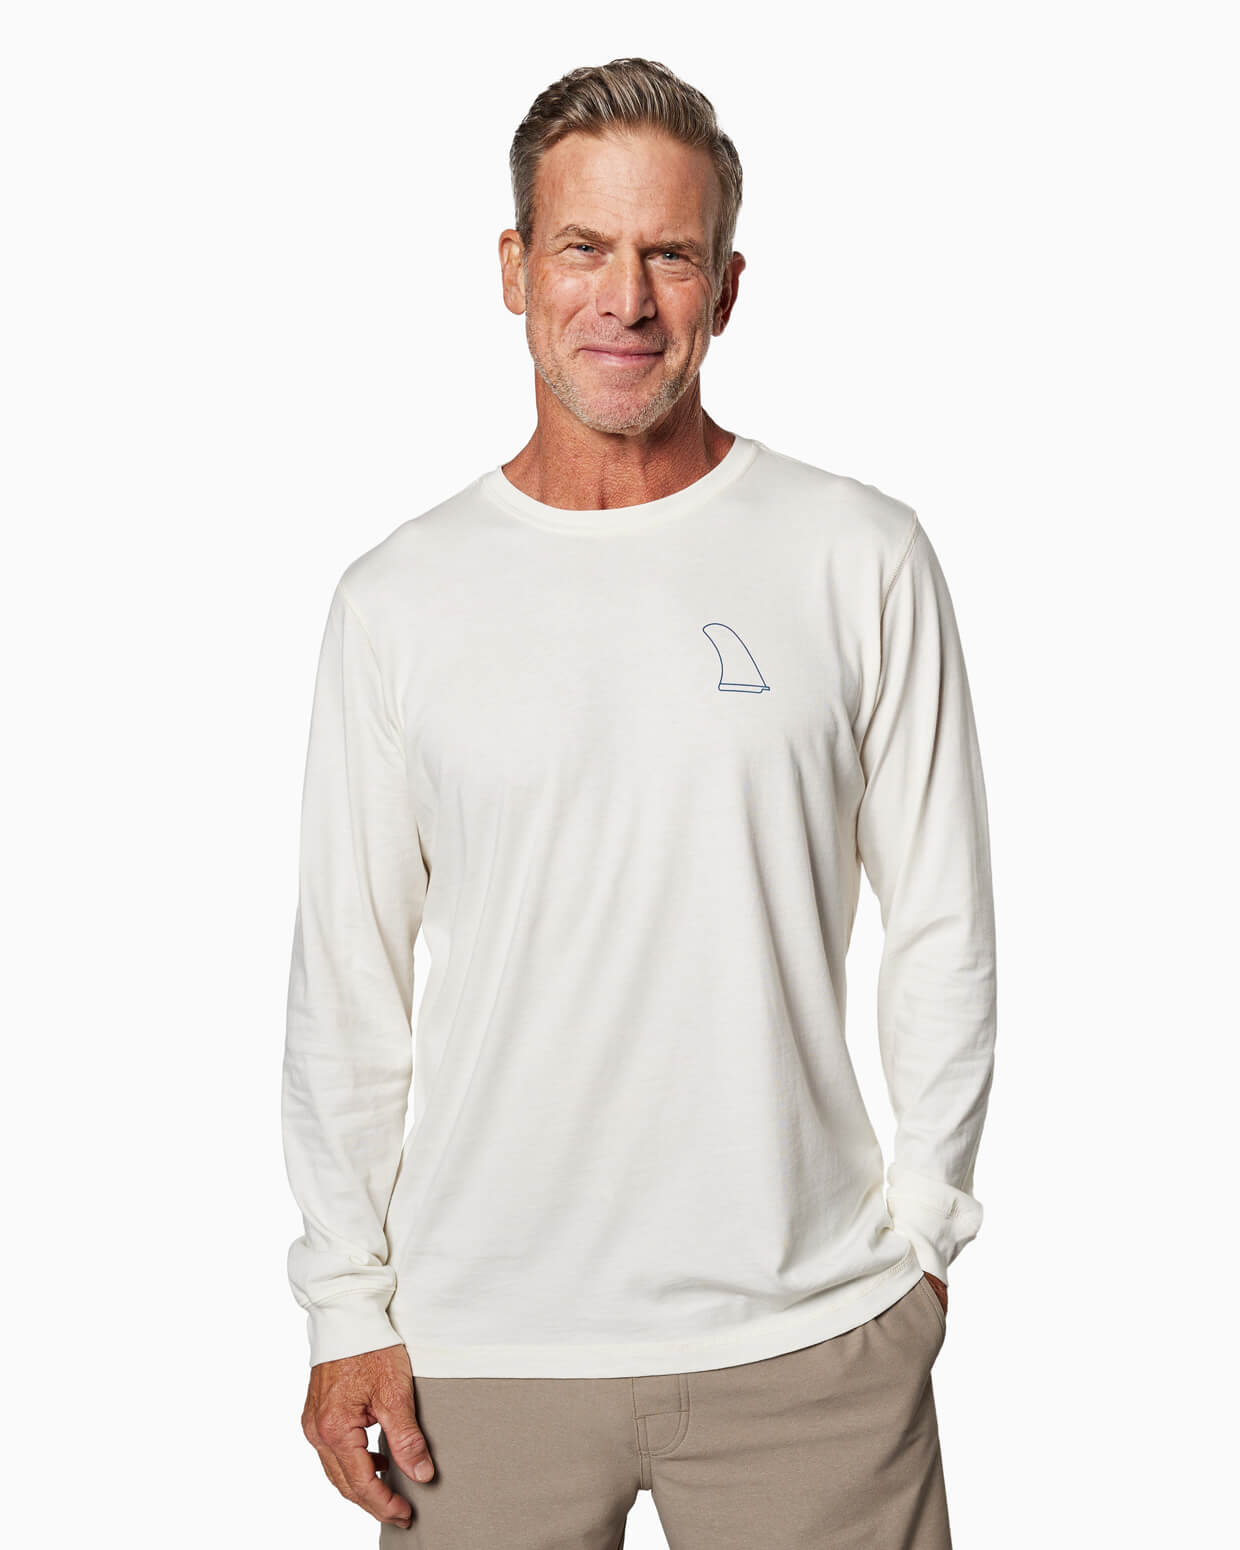 Jack Fin | Long Sleeve T-Shirt